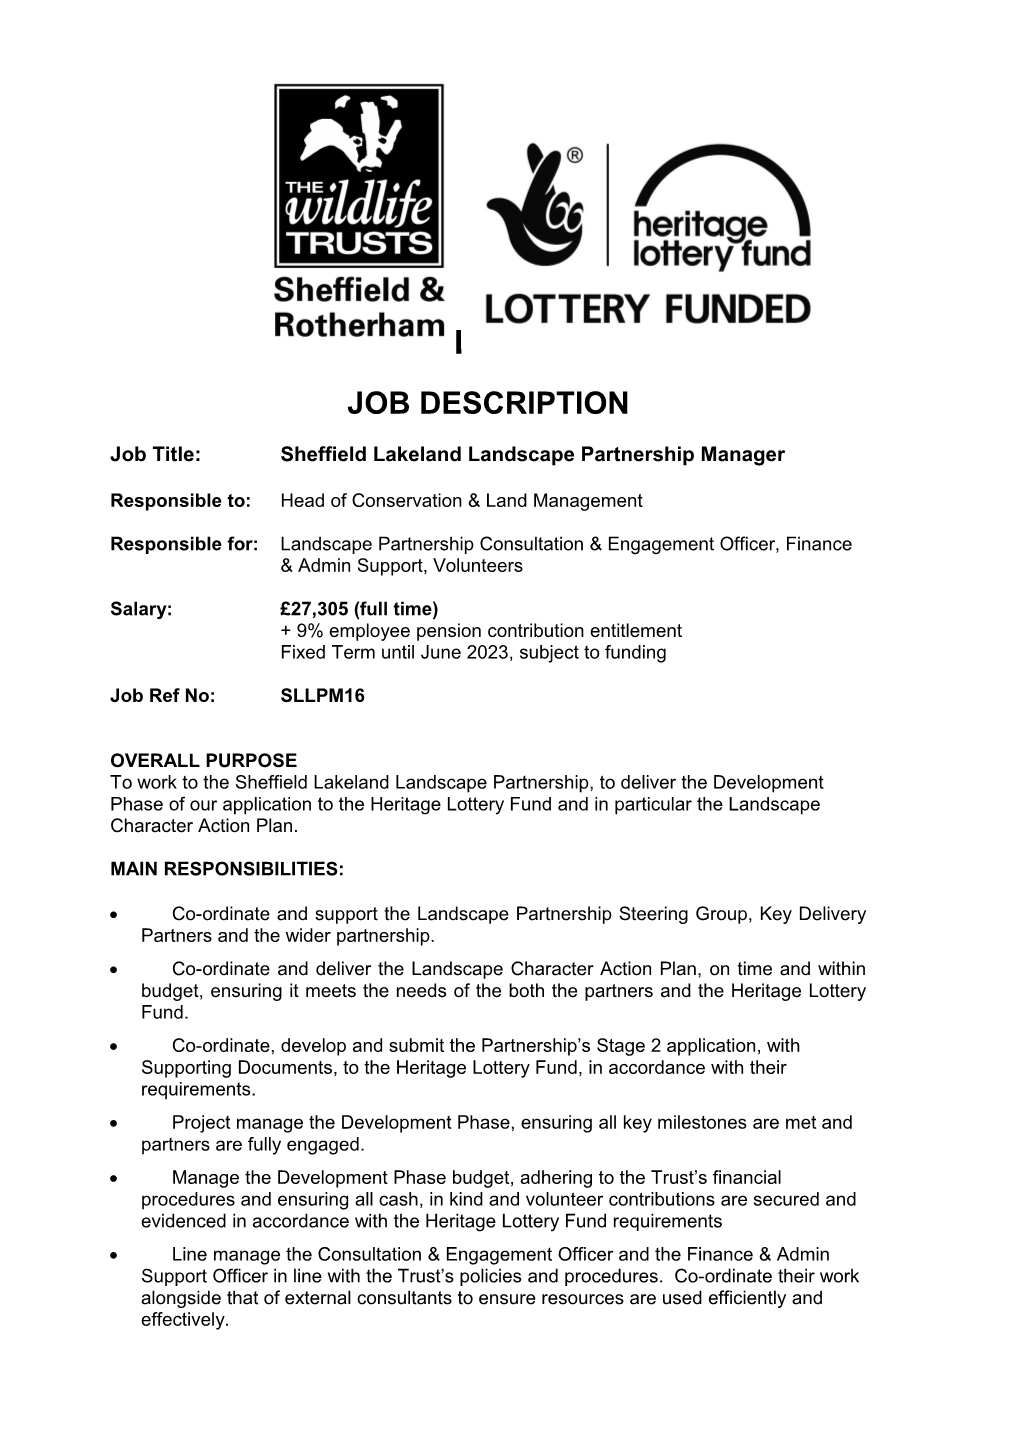 Job Title: Sheffield Lakeland Landscape Partnership Manager